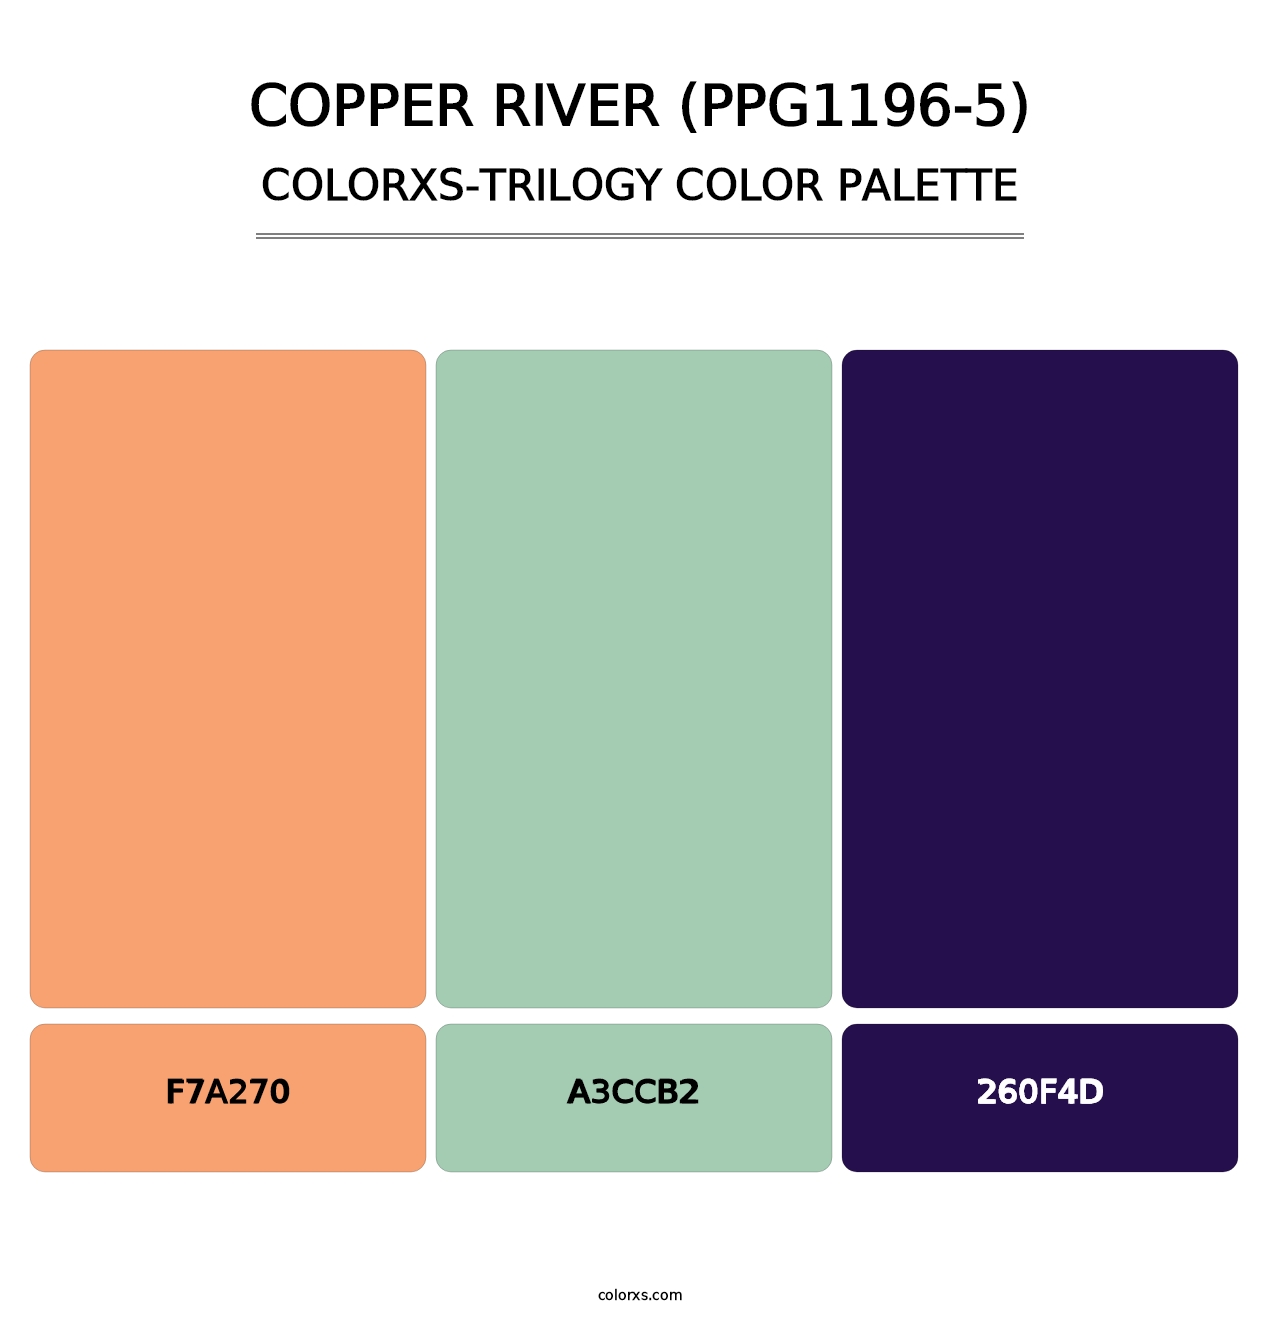 Copper River (PPG1196-5) - Colorxs Trilogy Palette